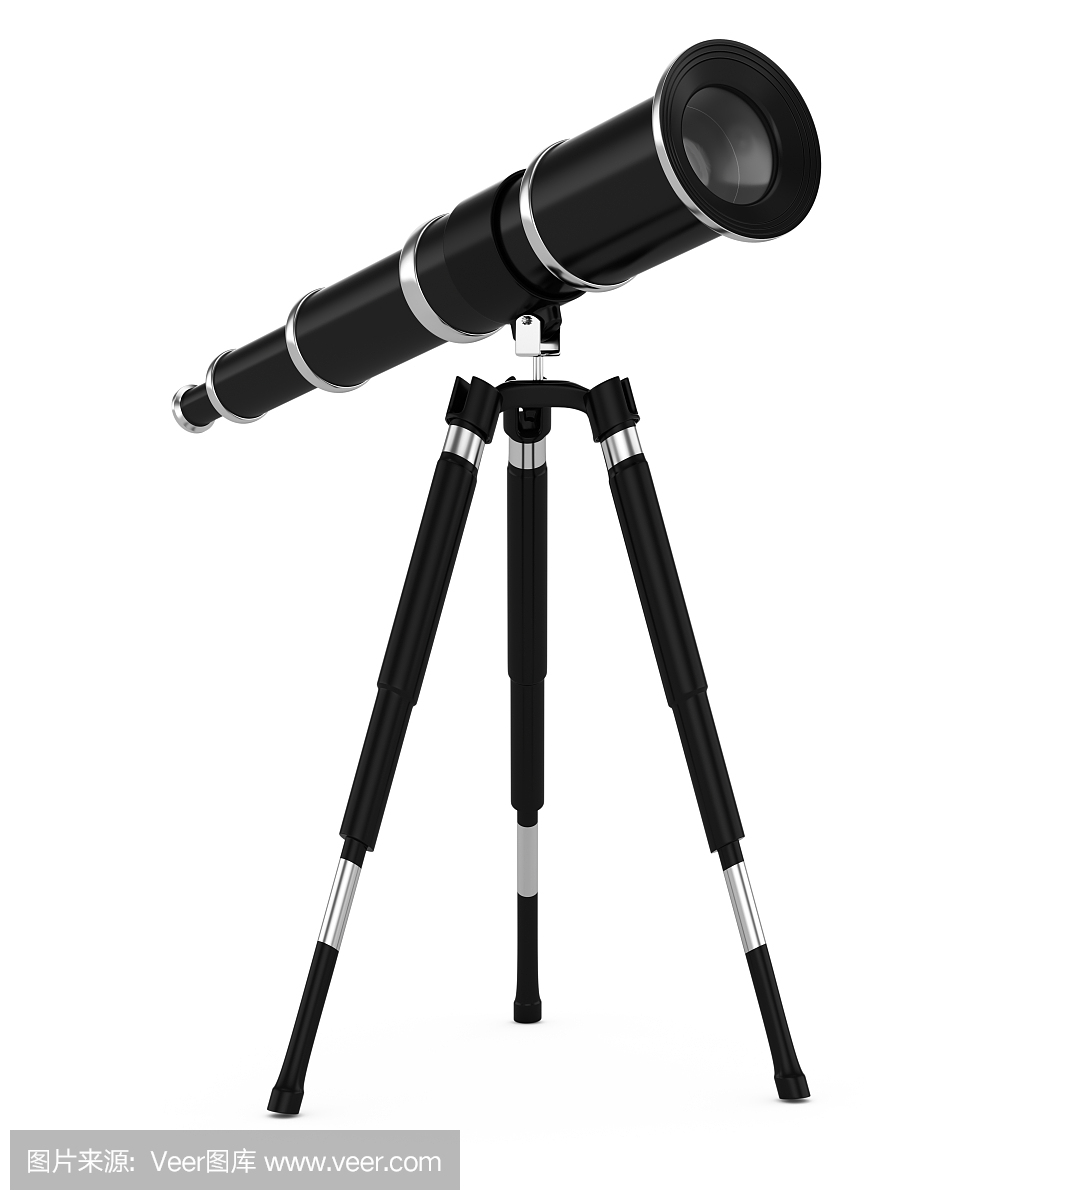 便携式望远镜,白日望远镜,单筒望远镜,航海望远镜